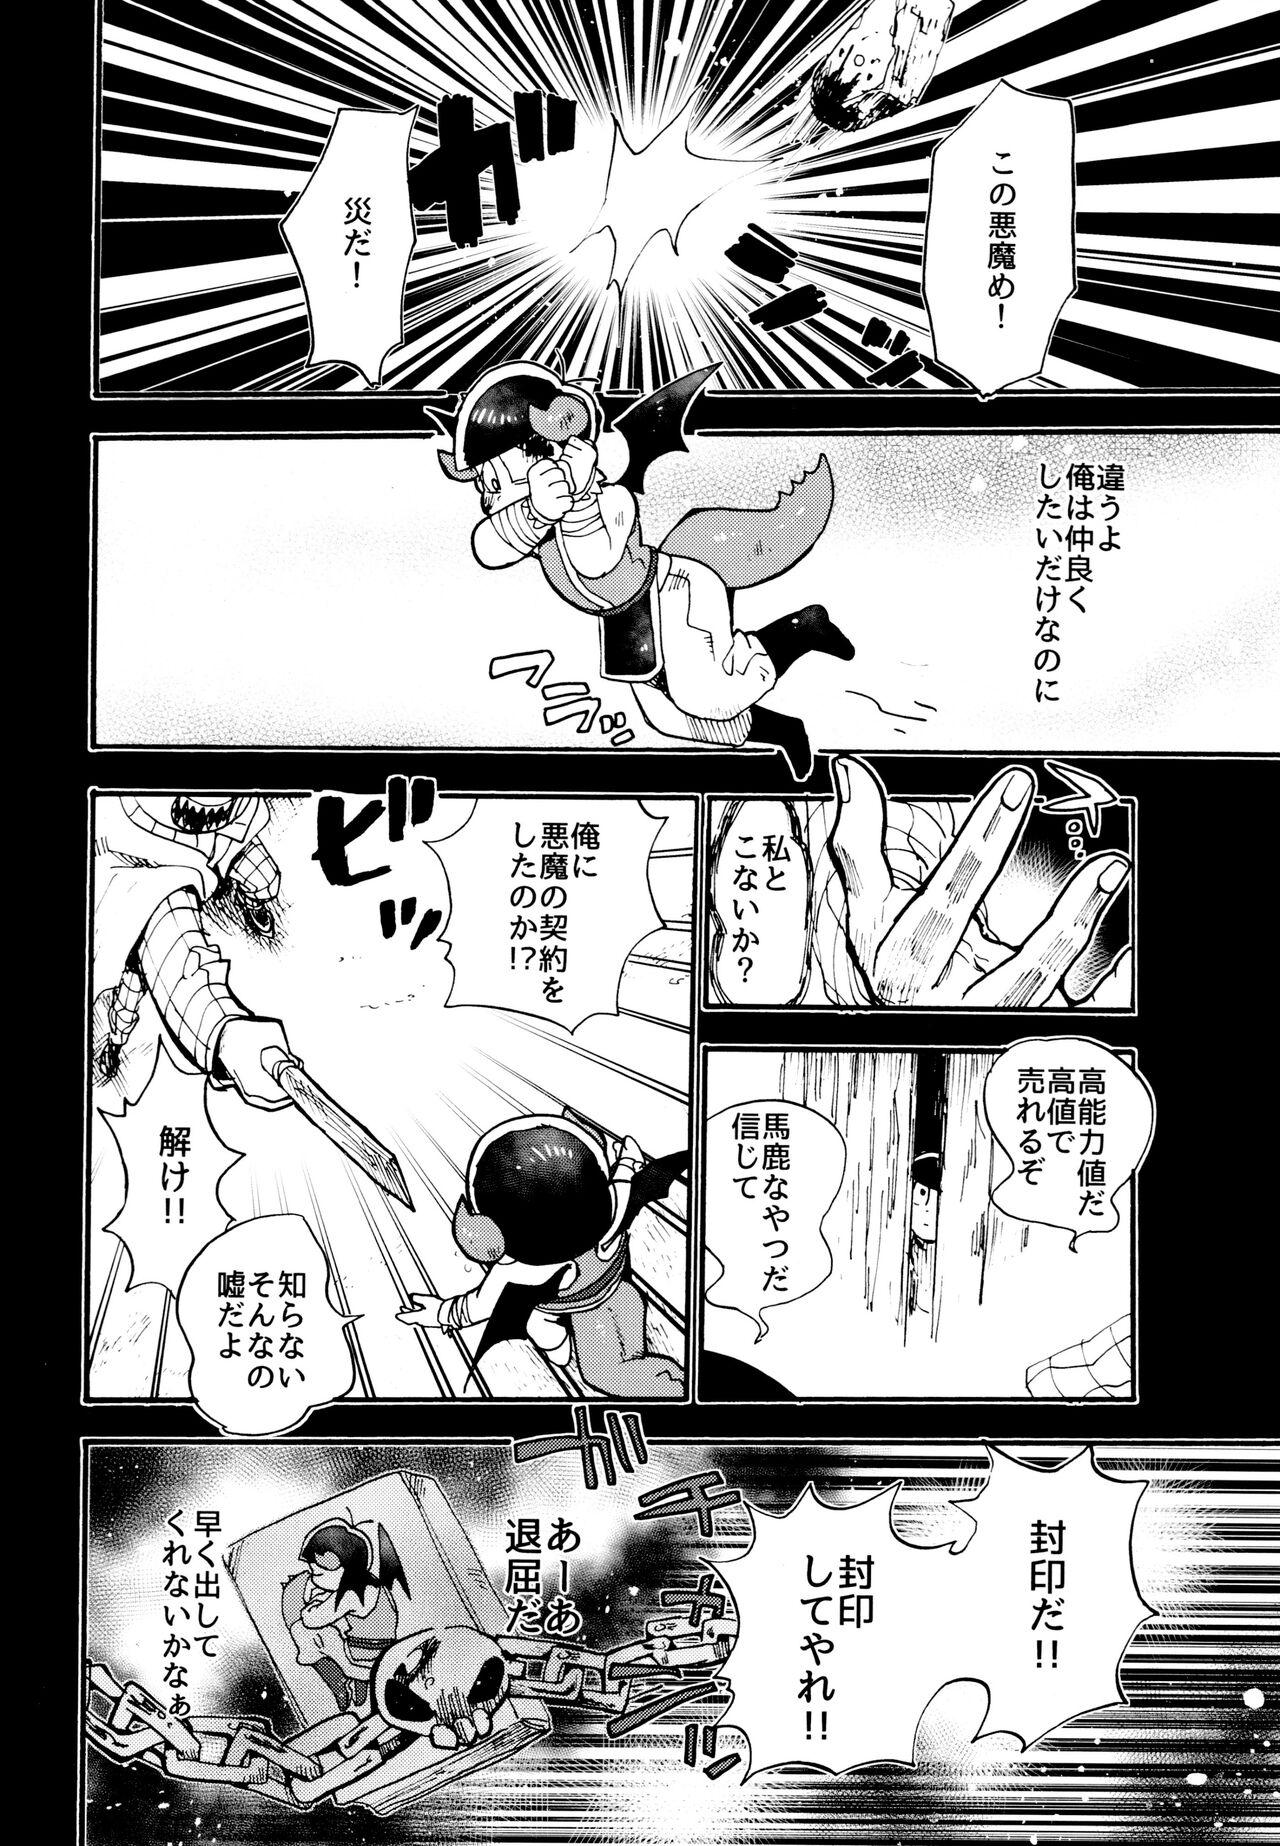 Cousin Hoshi no Kioku 2 - Osomatsu-san Hungarian - Page 3